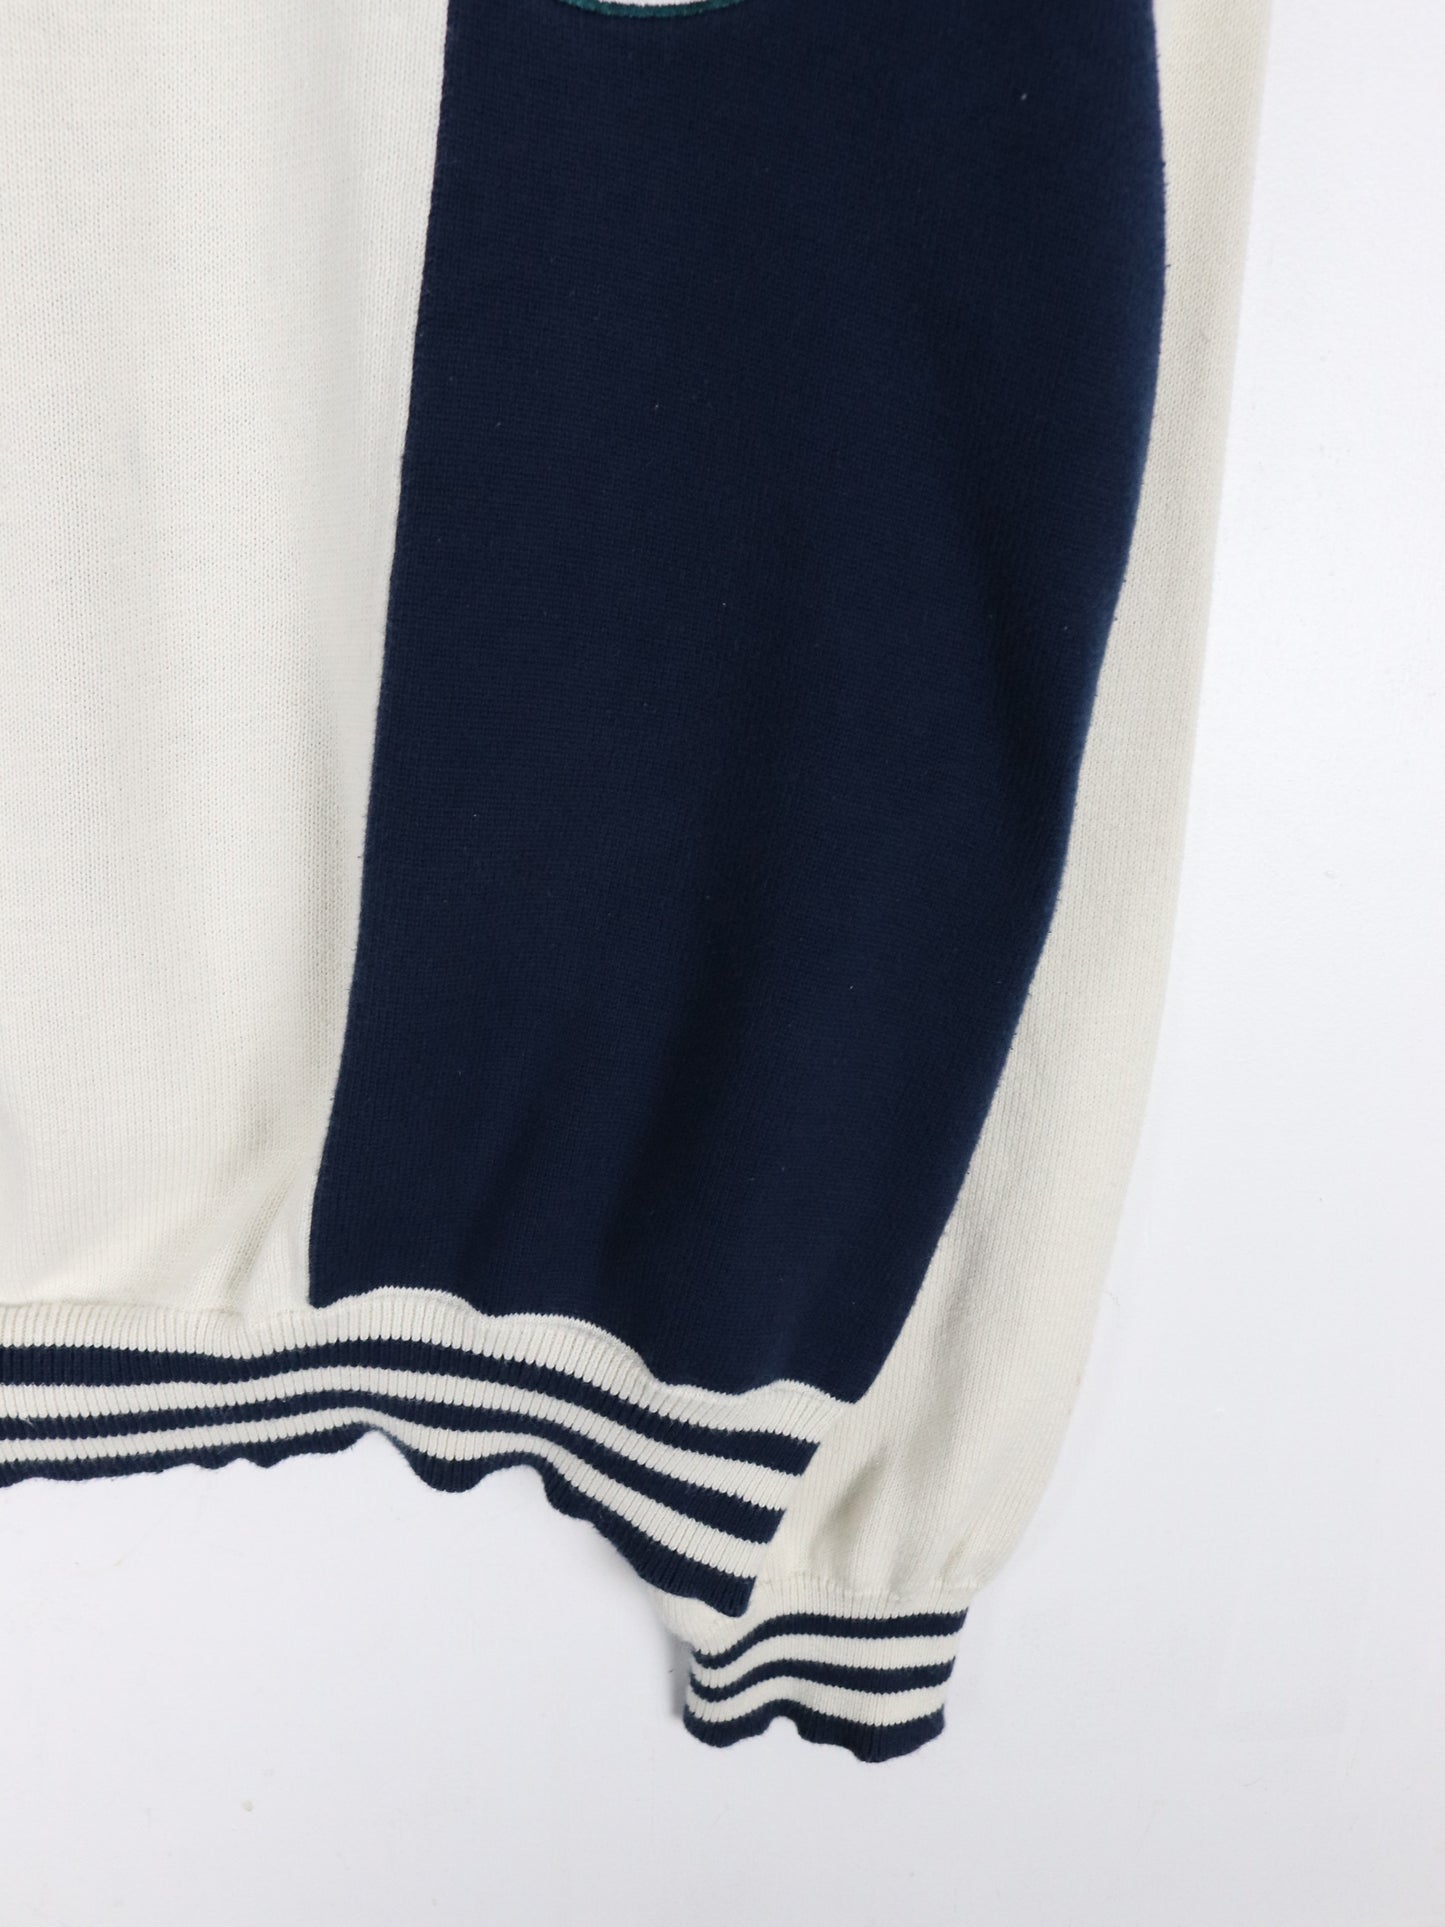 Vintage Par Four Sweater Fits Mens Large Blue White Knit Golf